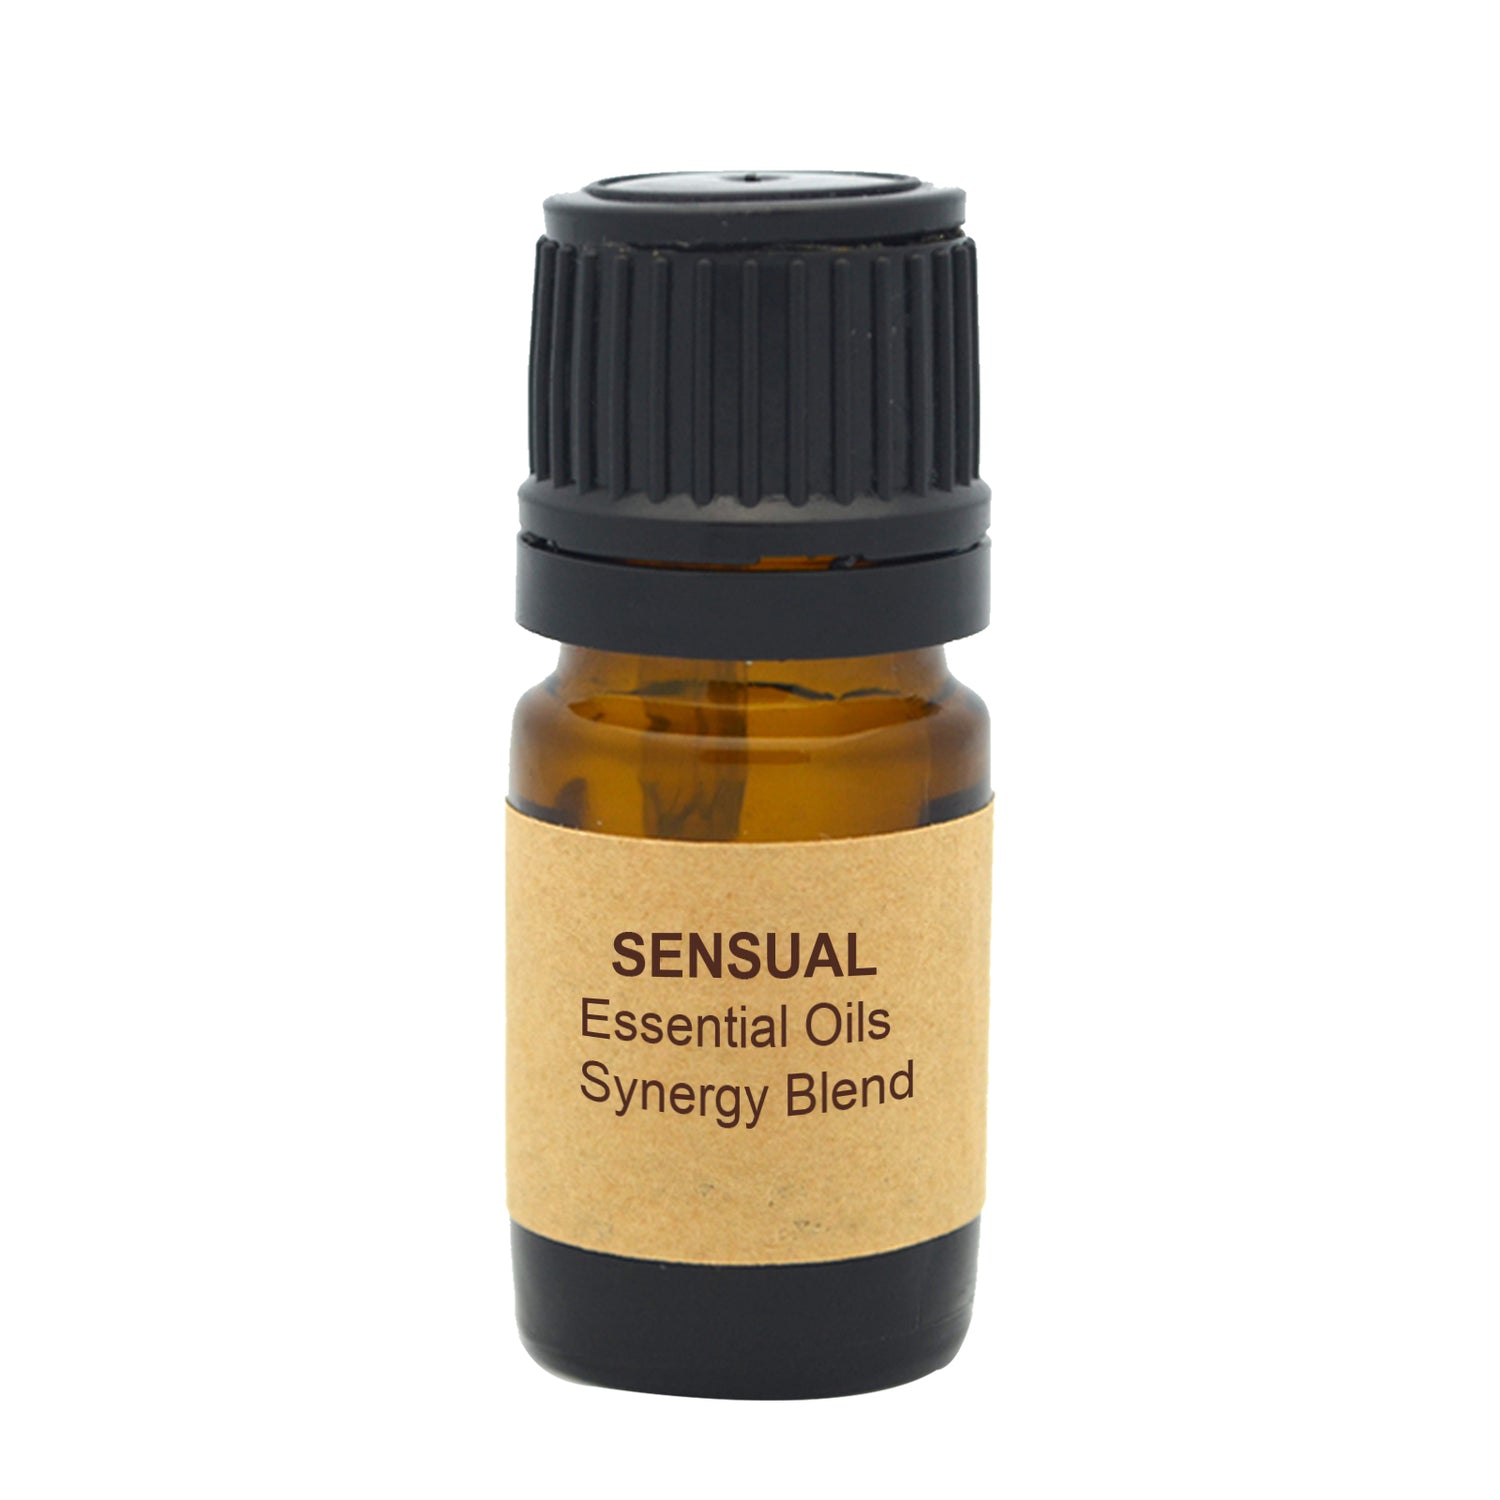 Sensual Essential Oils Synergy Blend